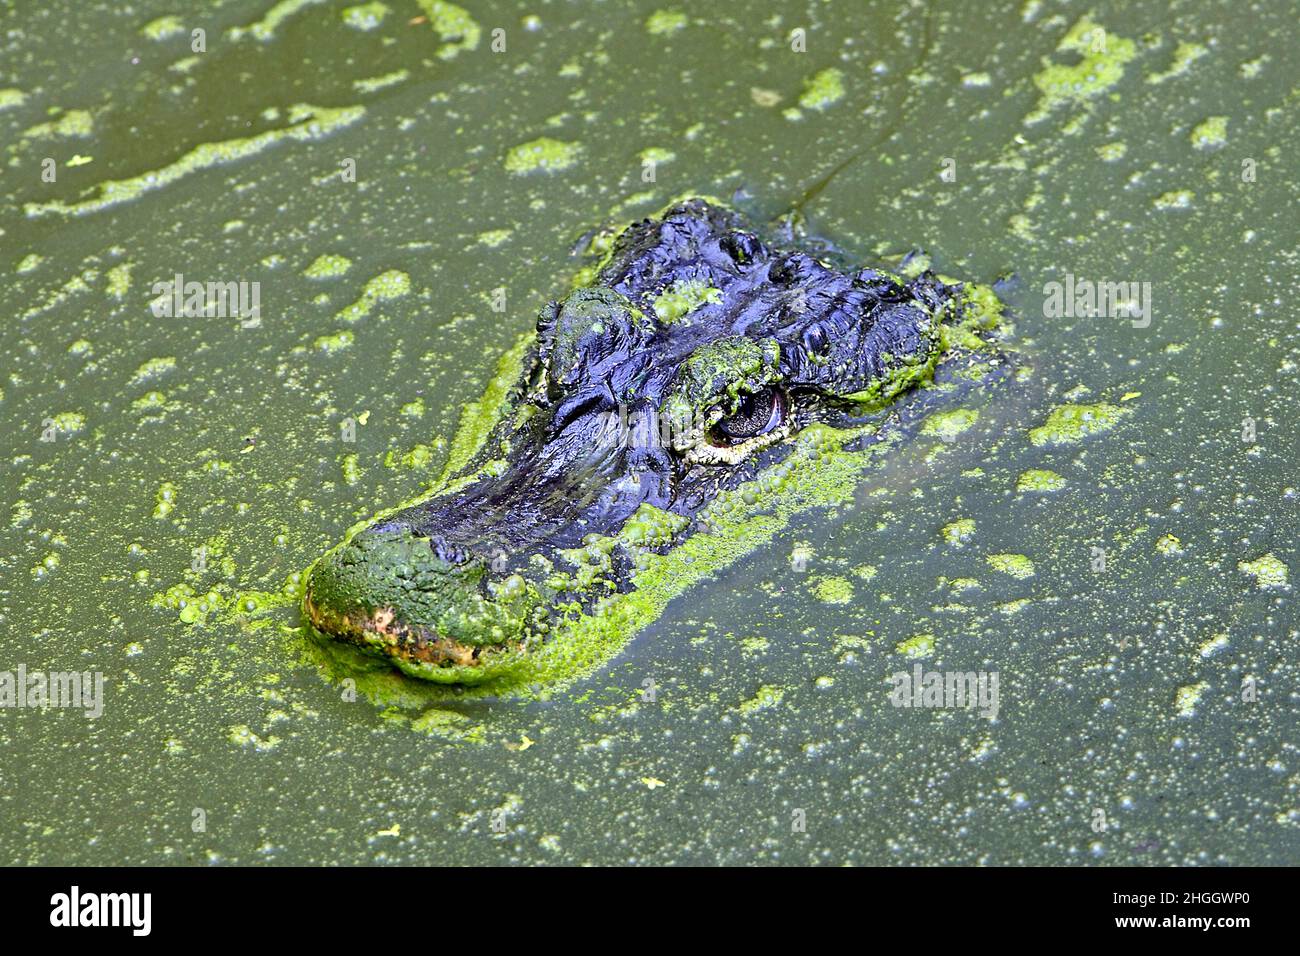 Chinese alligator (Alligator sinensis), portrait in water Stock Photo